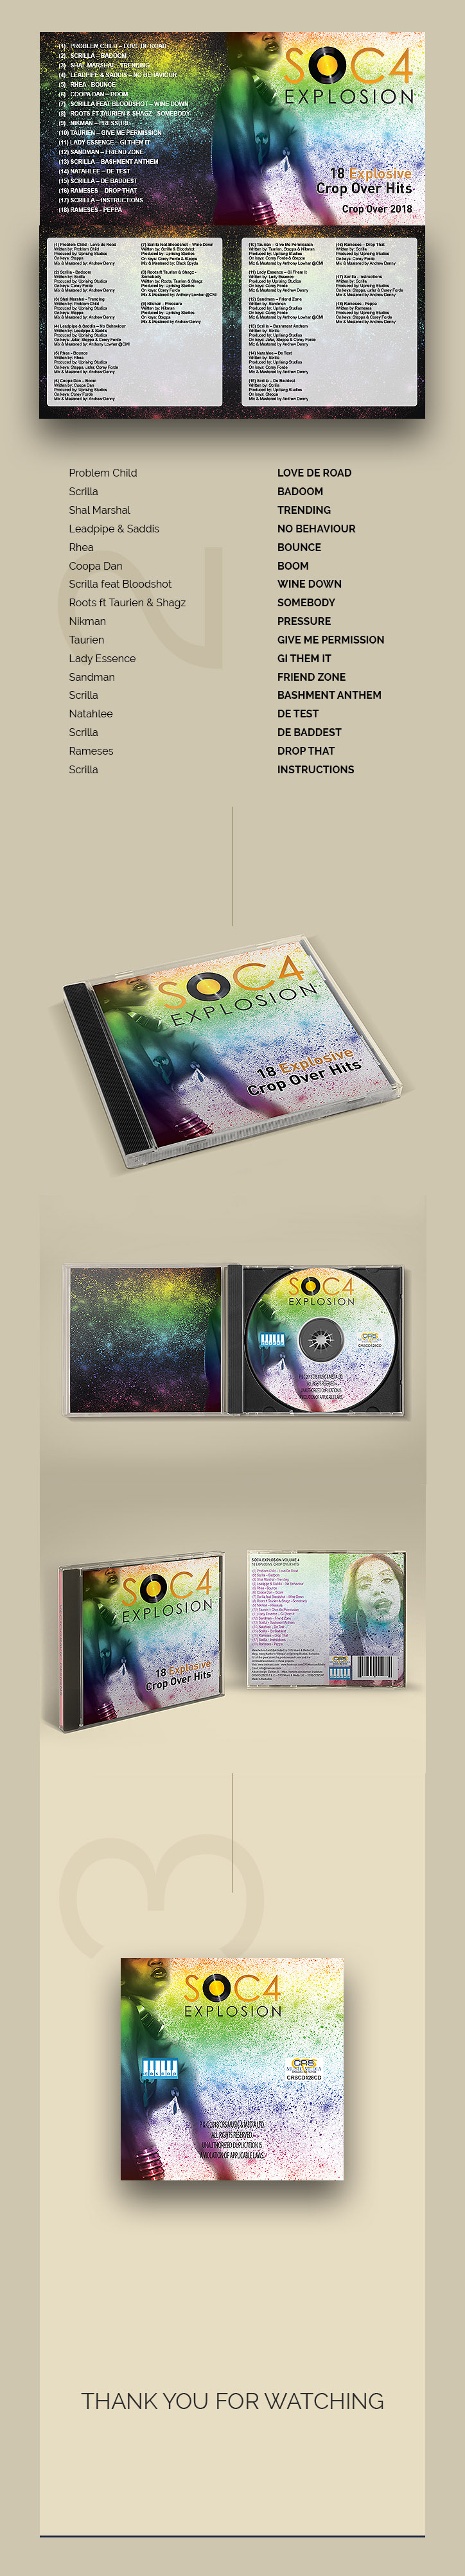 Cd Album UI design music Album design visual design photoshop Illustrator adobe Soca